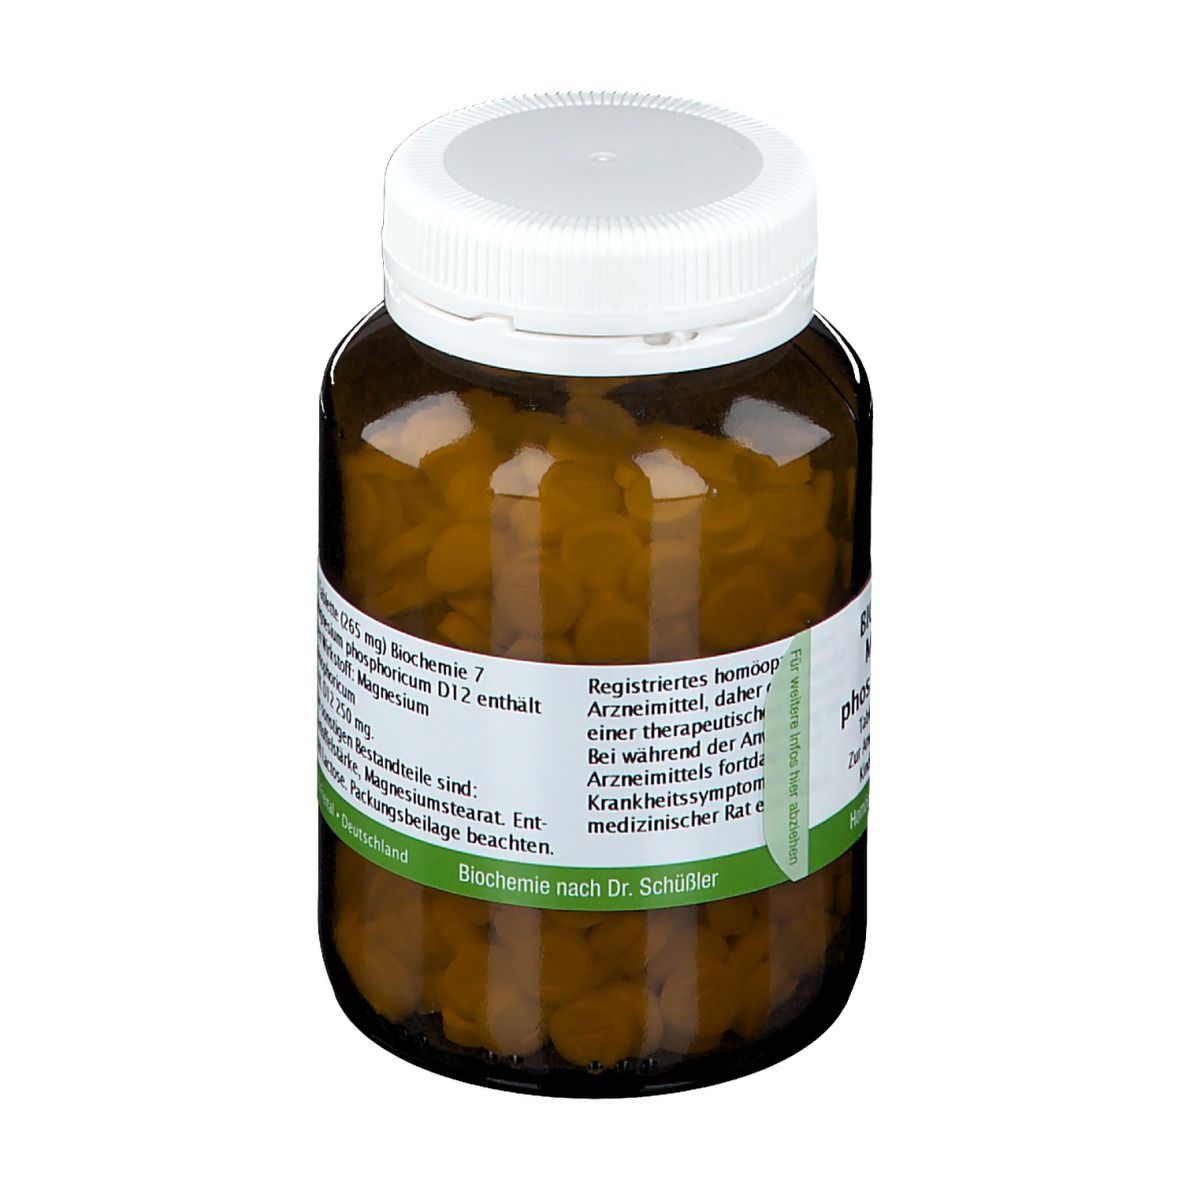 Bombastus Biochemie 7 Magnesium phosphoricum D12 Tabletten